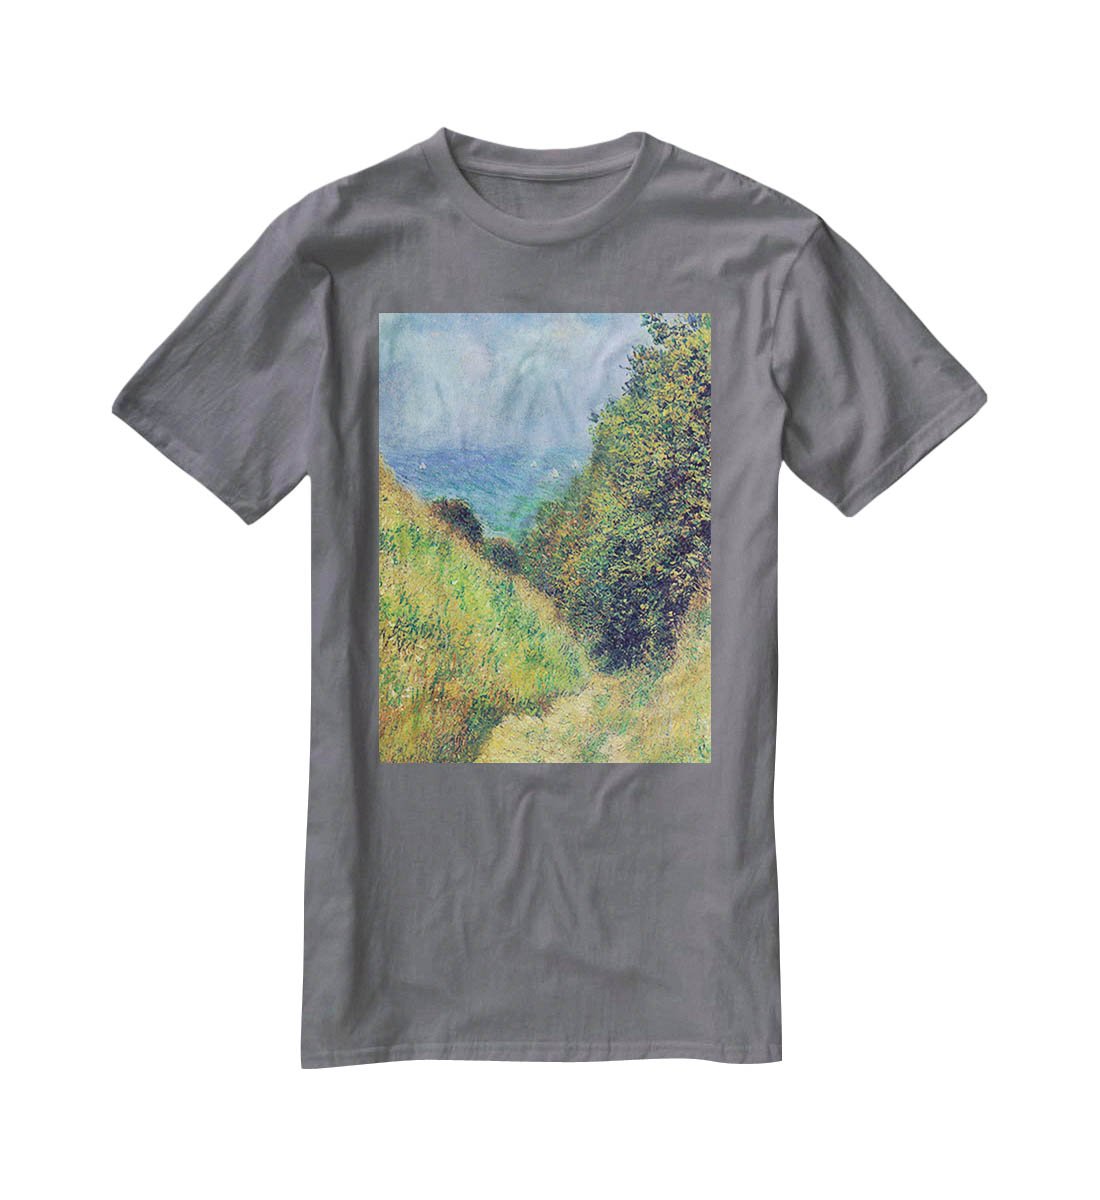 Pourville 2 by Monet T-Shirt - Canvas Art Rocks - 3